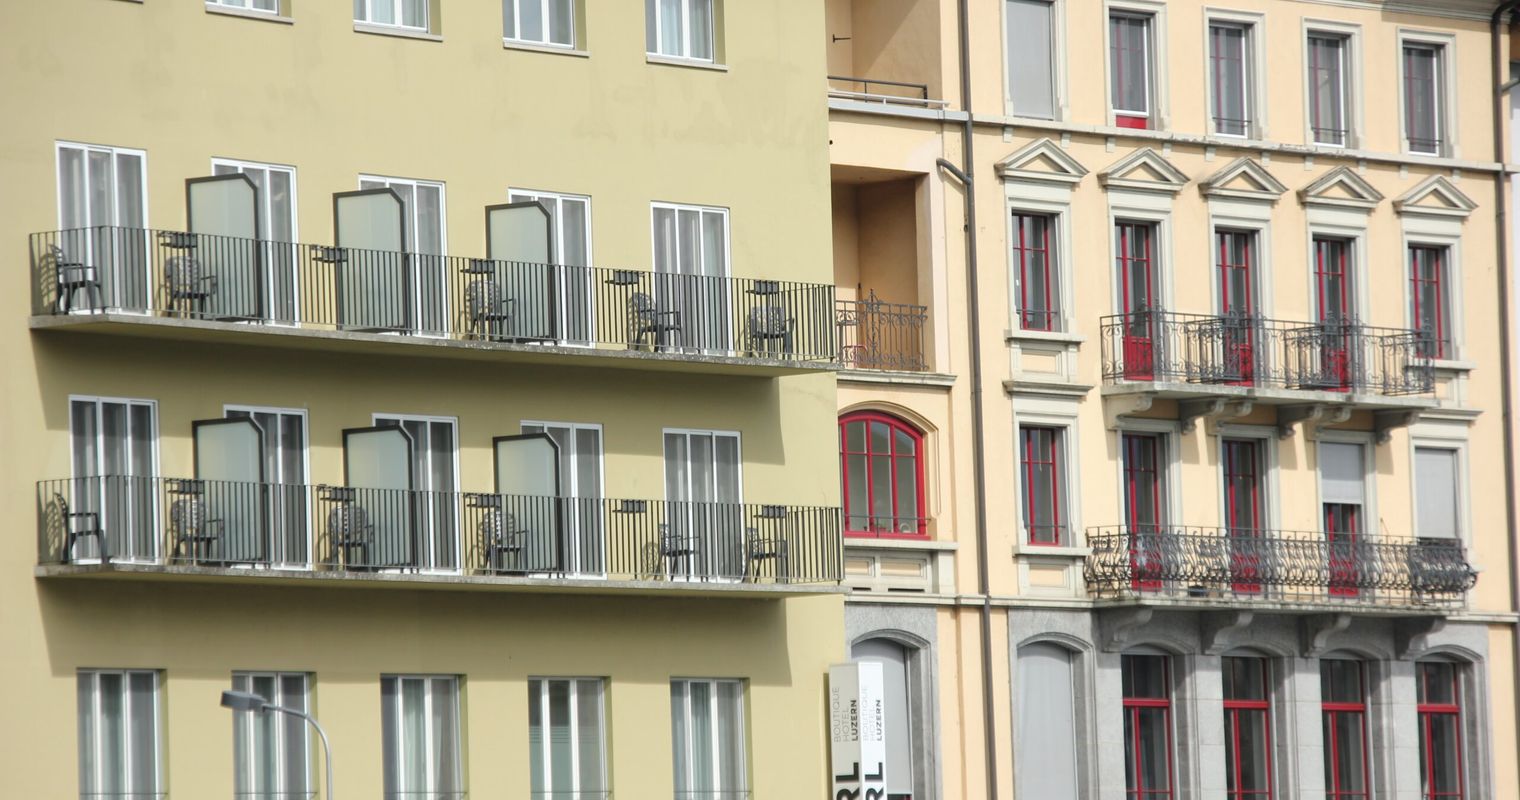 Wohnungsbau stockt: FDP schlägt Kurswechsel vor